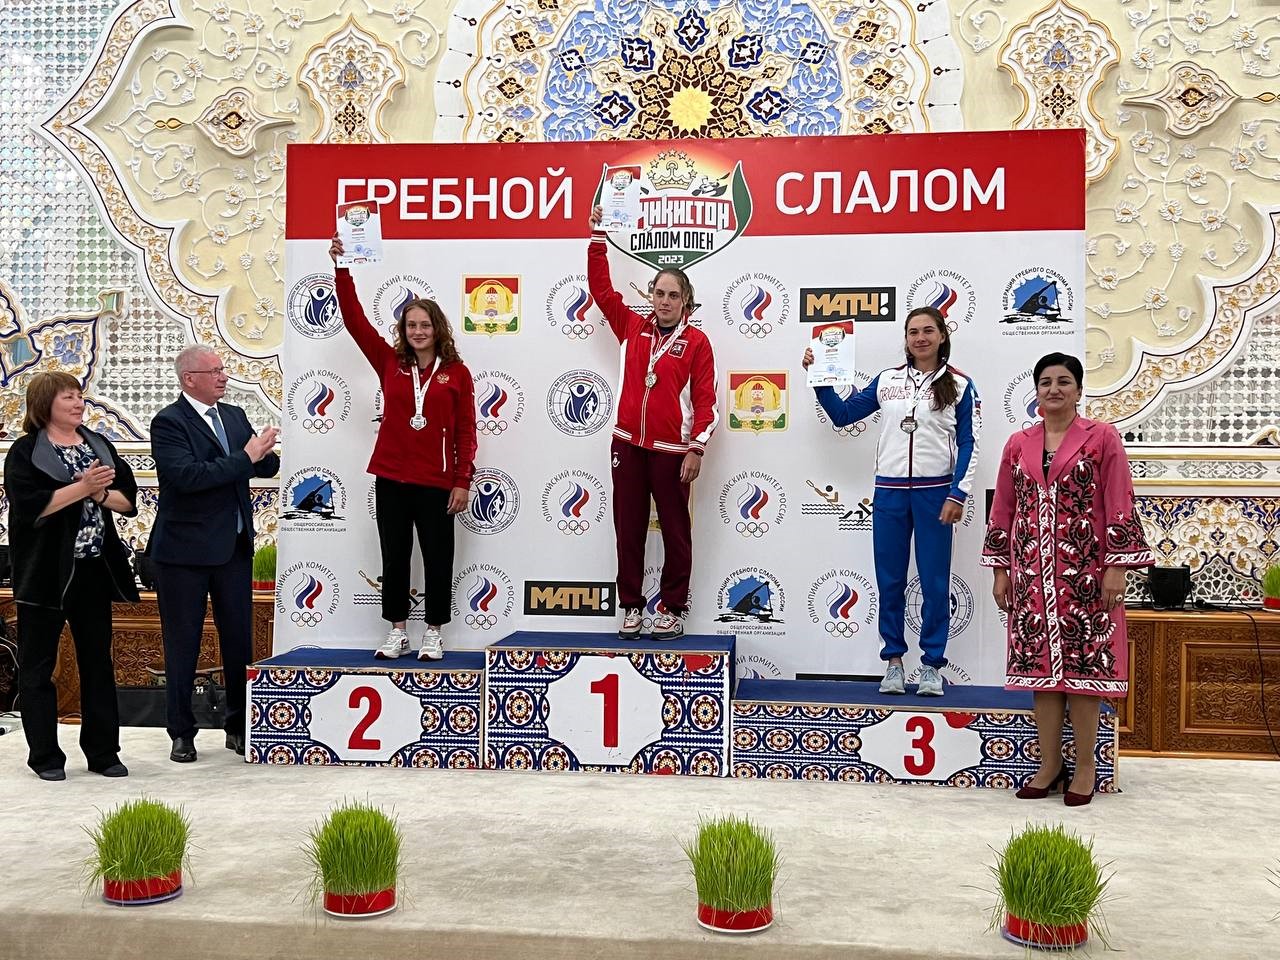 Ксения Крылова рада победе на «Точикистон слалом опен»